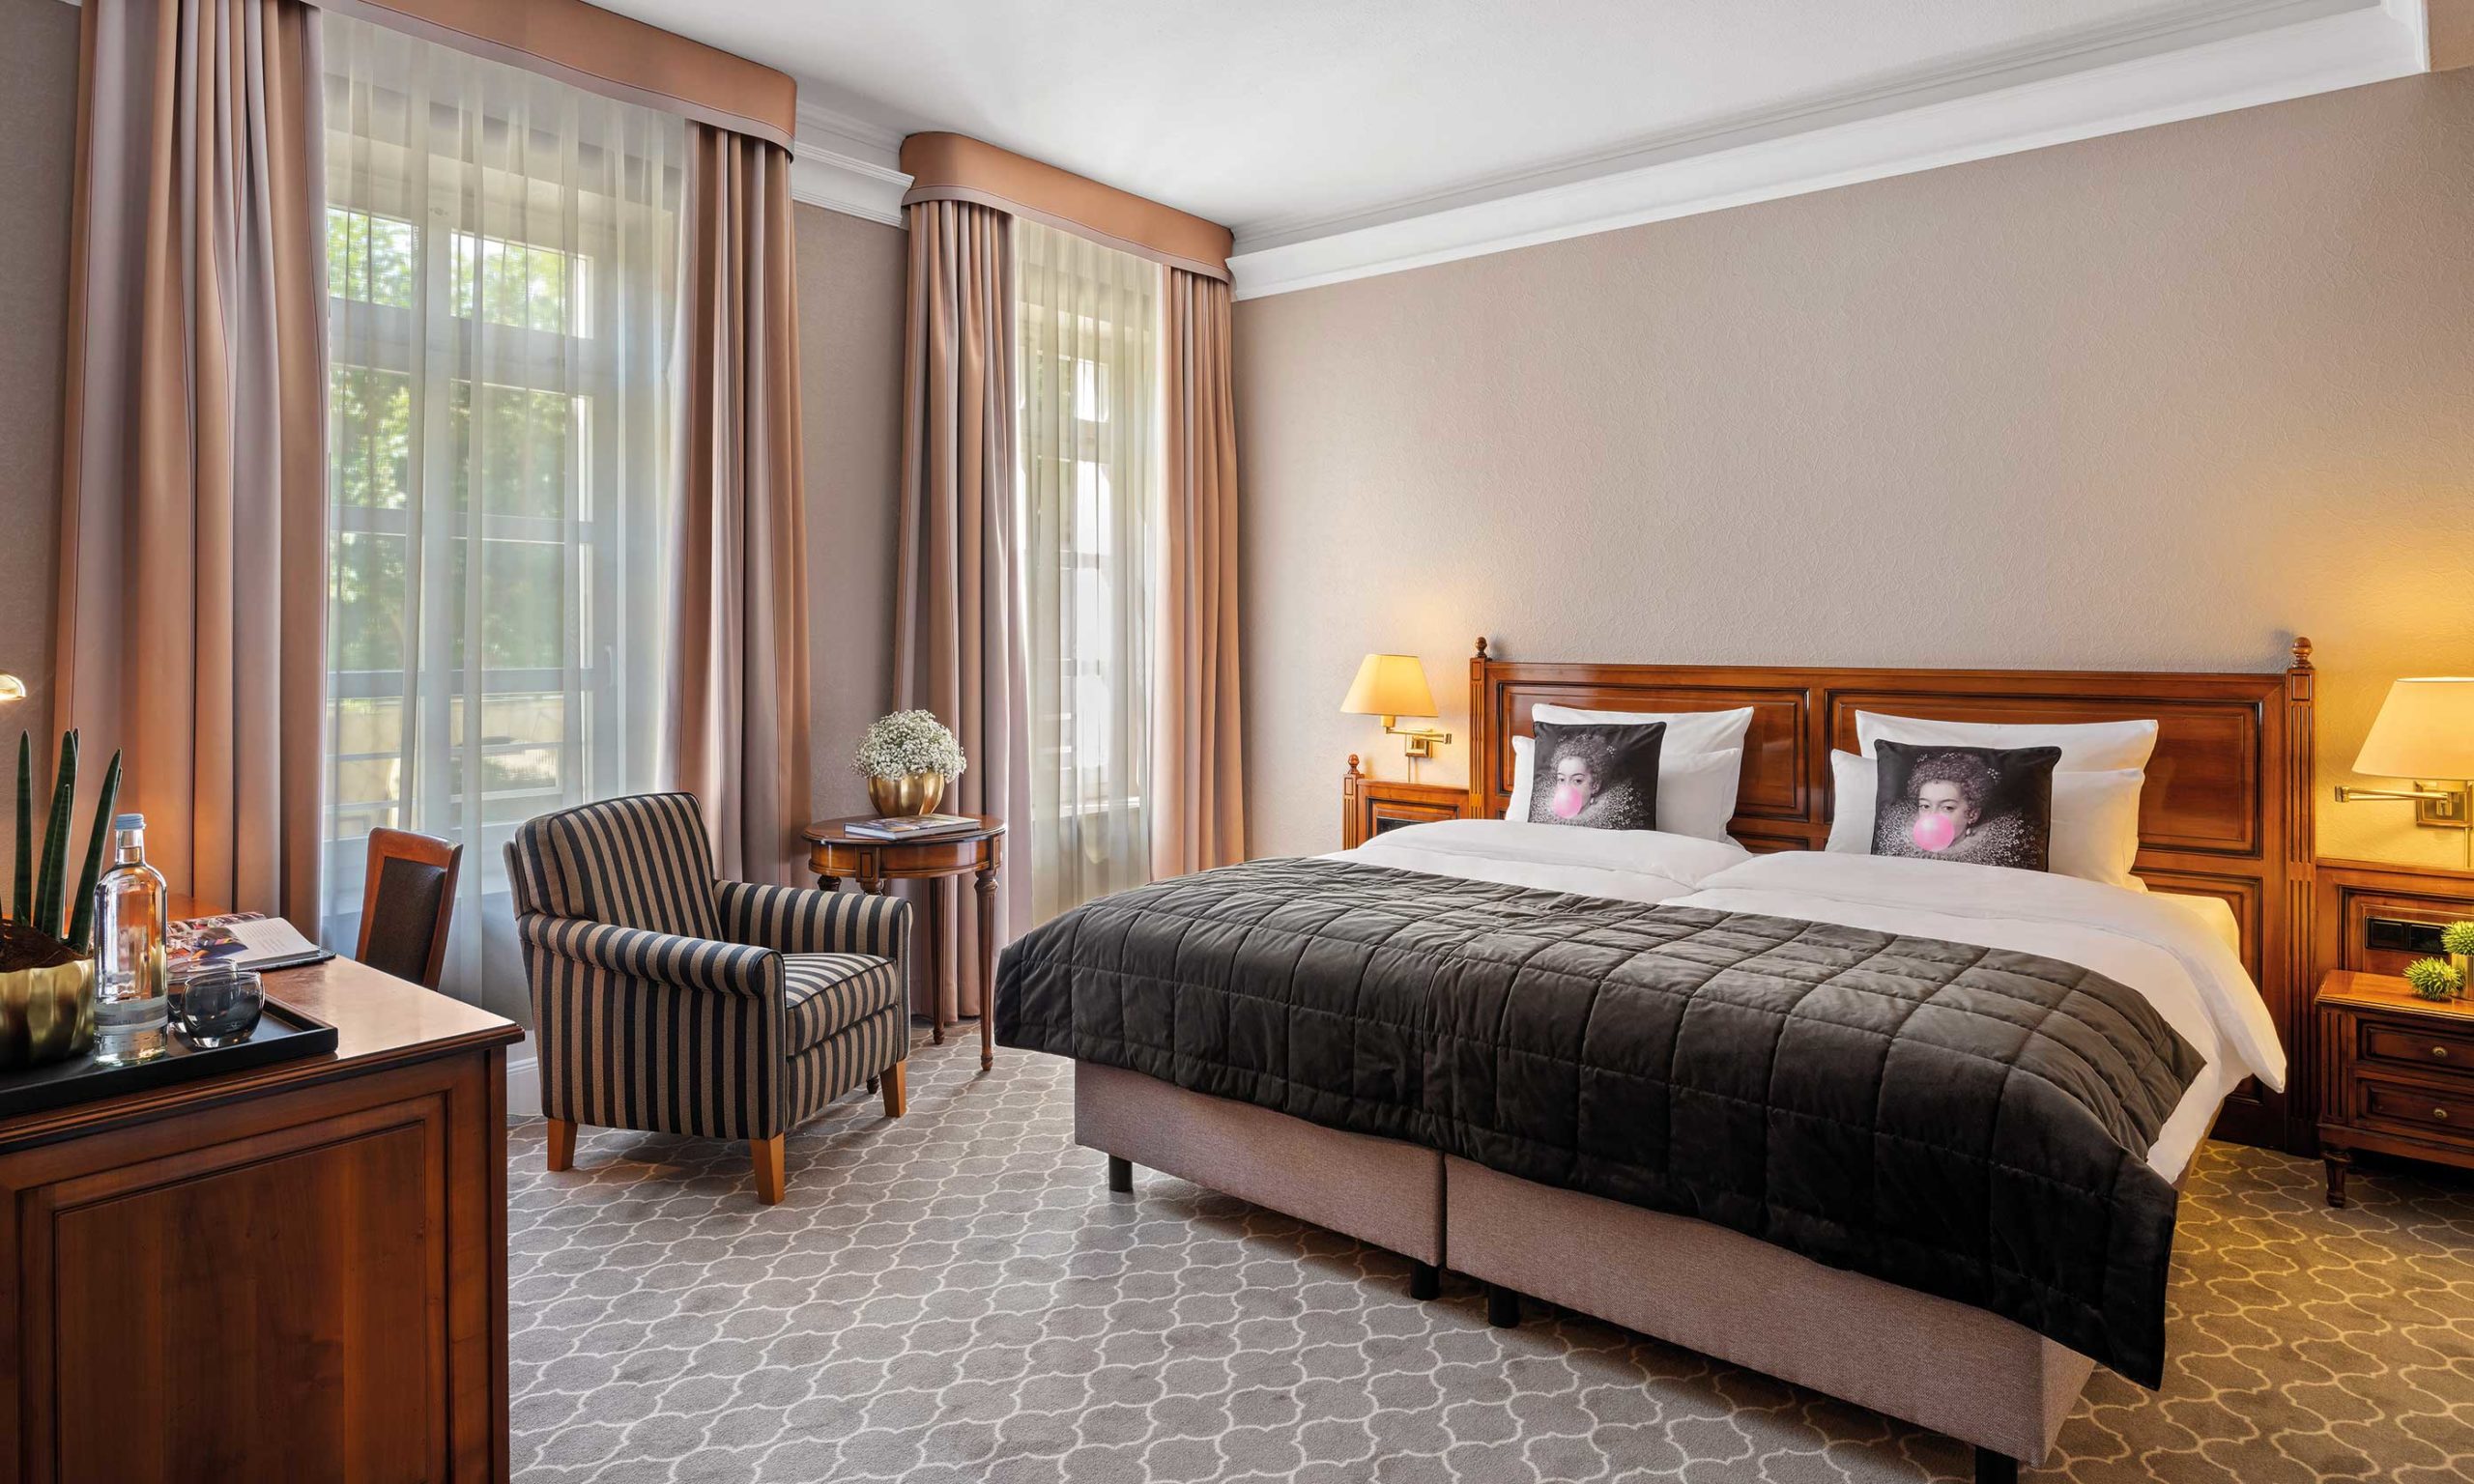 King Size Bett im Comfort Zimmer im Romantik Hotel NRW Parkhotel Engelsburg Recklinghausen